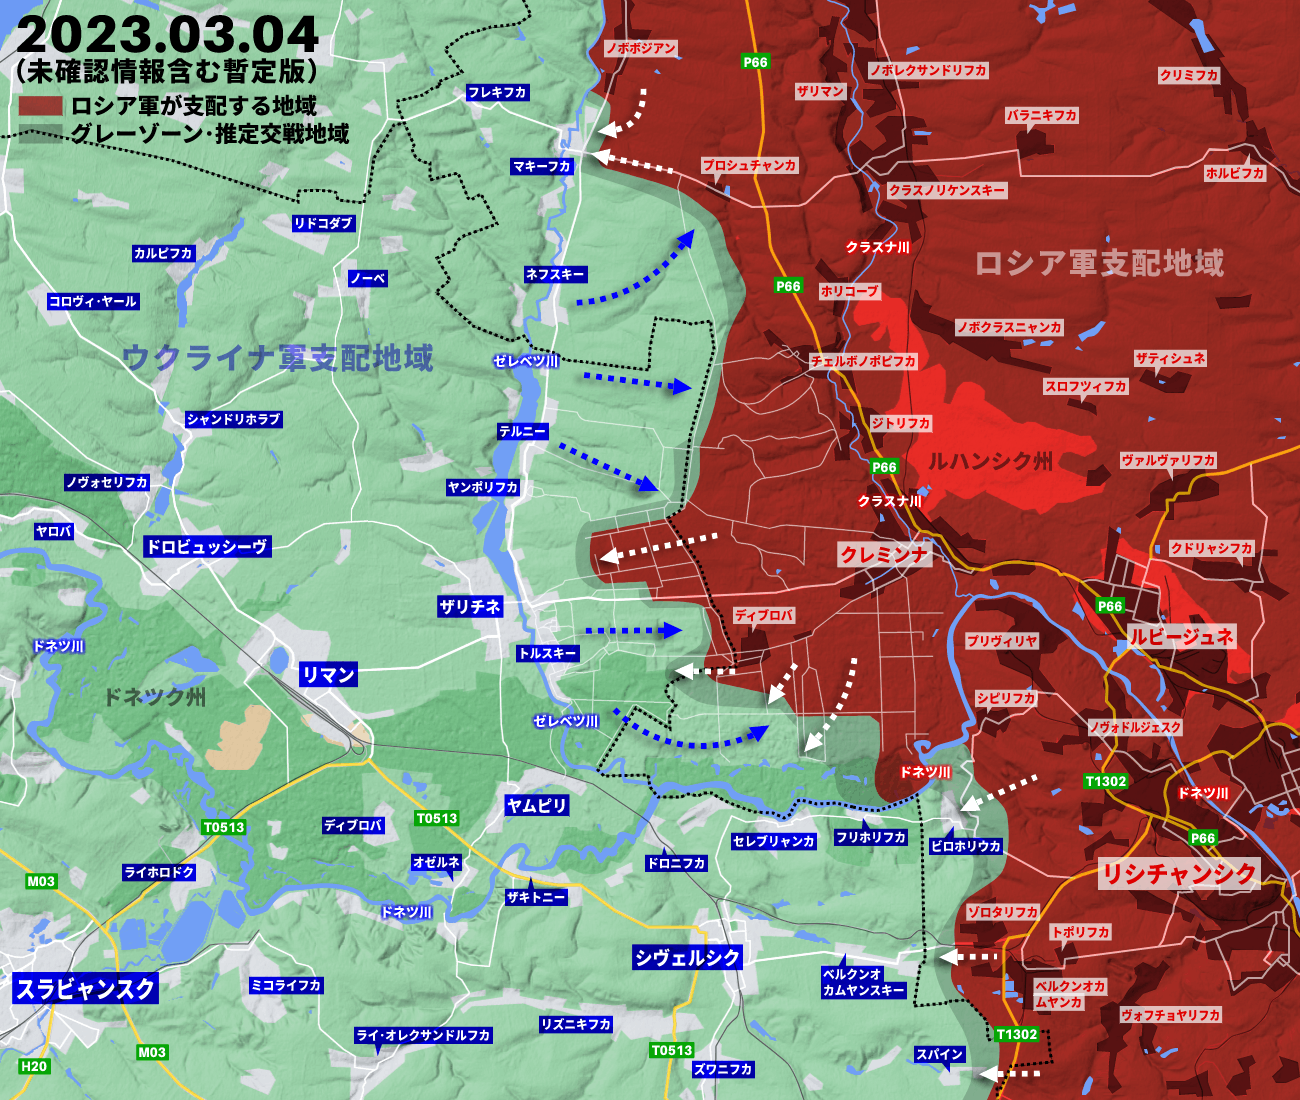 ウクライナ侵攻374日の戦況、クピャンスク、バフムート、アウディーイウカで動き